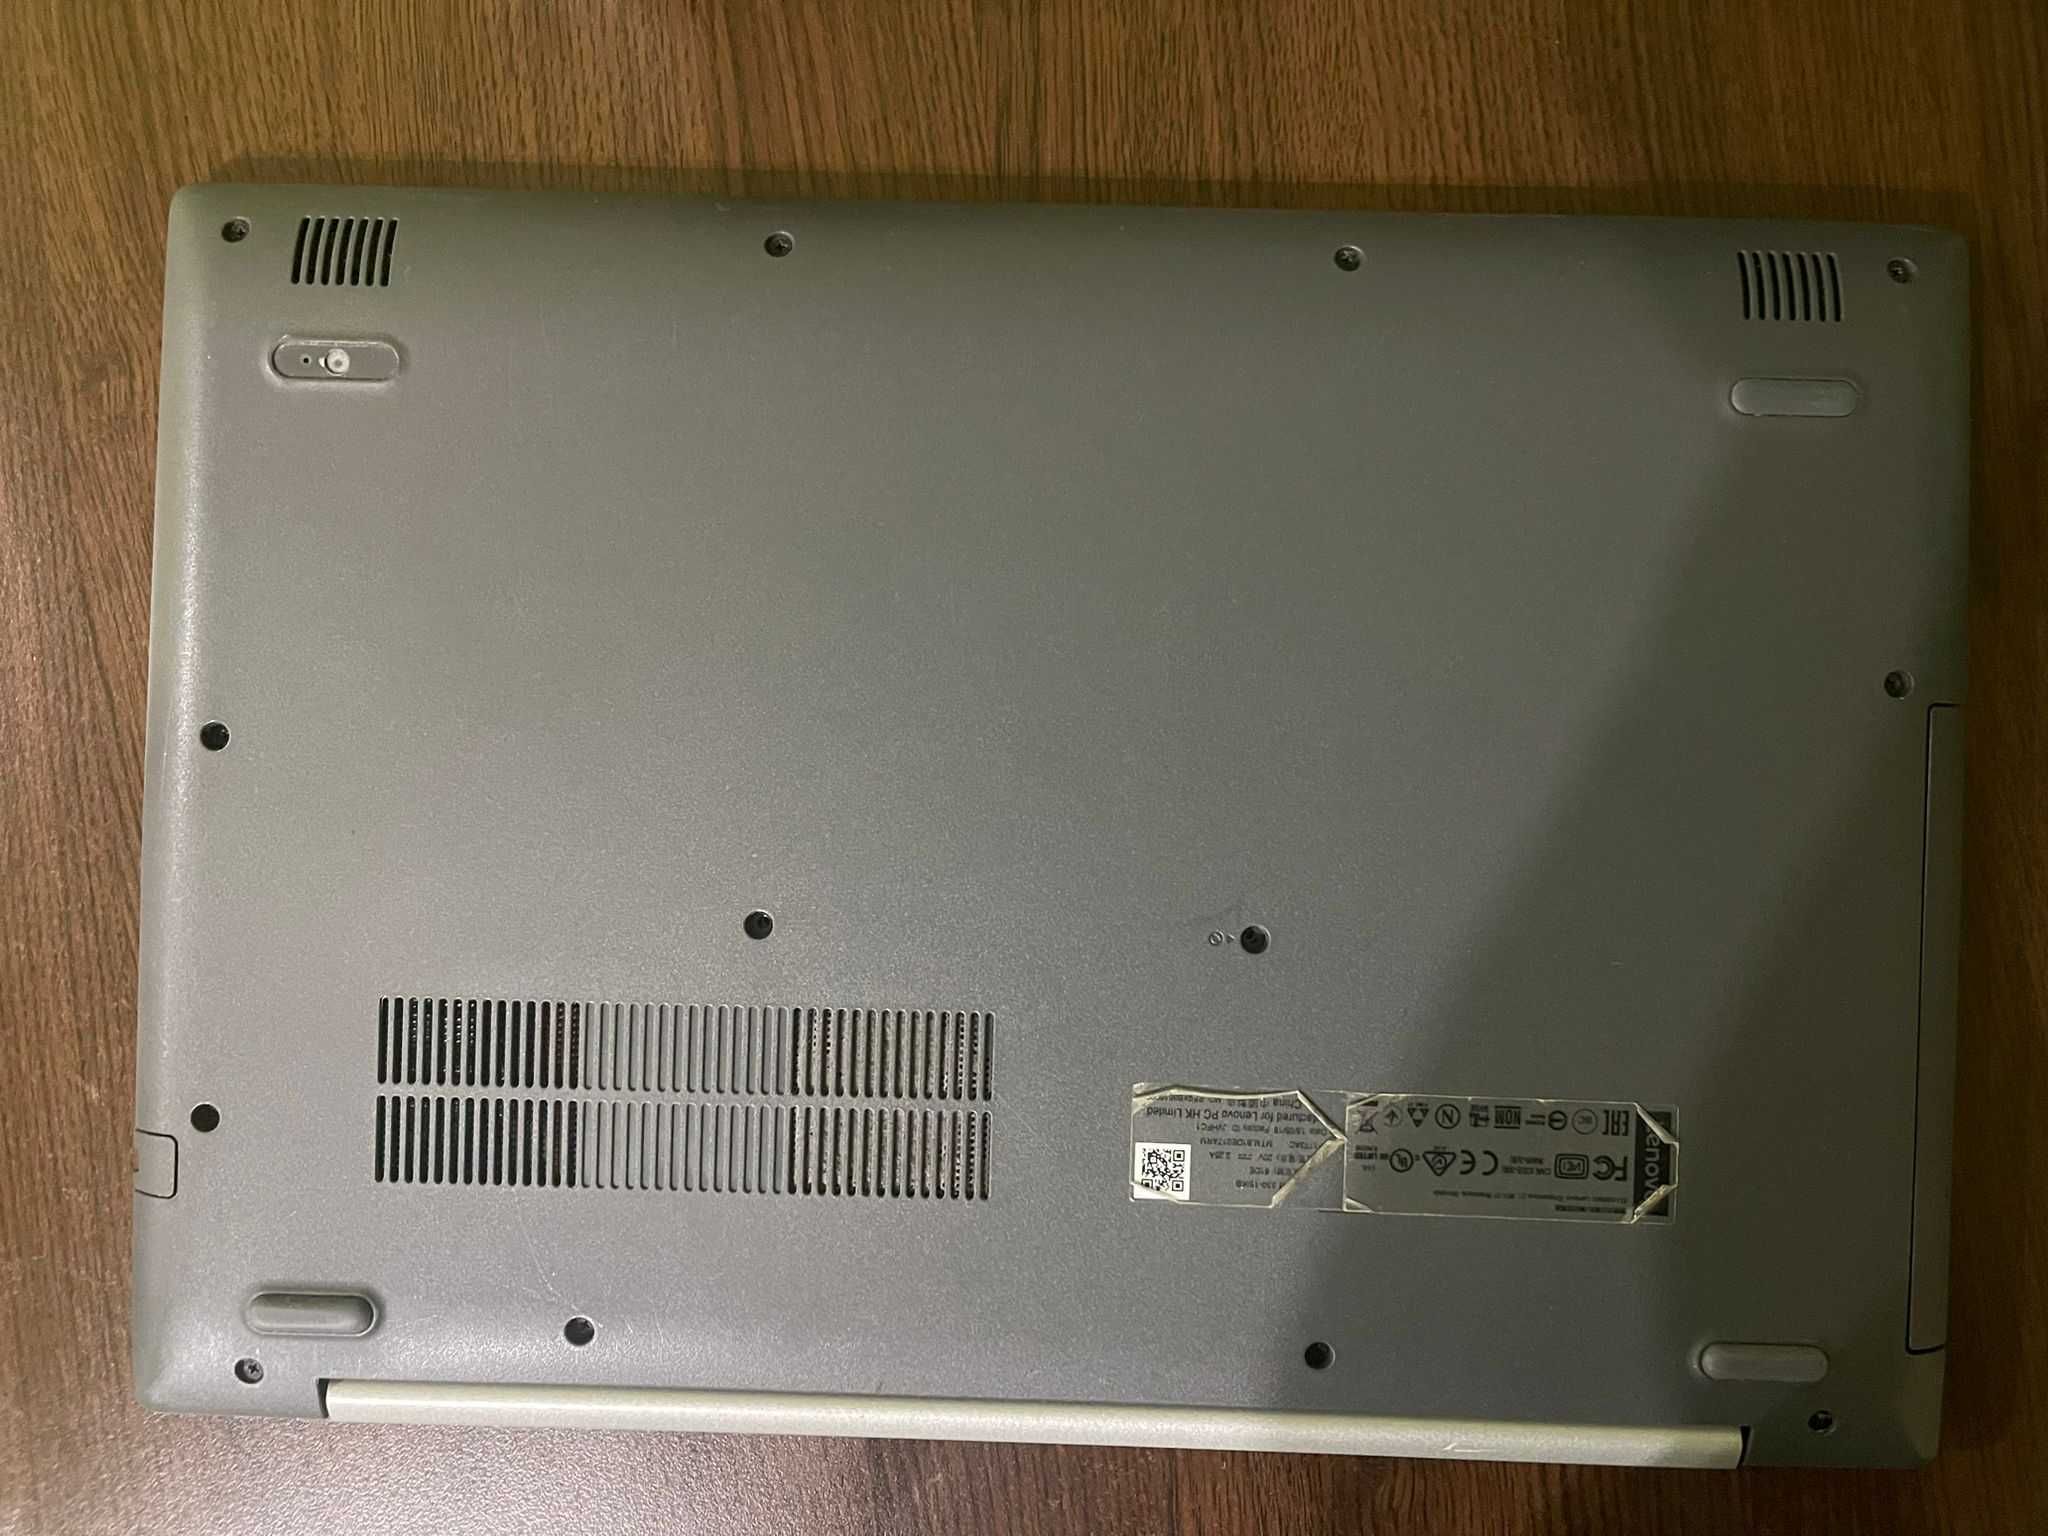 Lenovo Ideapad 330-15IKB, i5-8250U, 12GB Ram, SSD, Windows 10 Pro